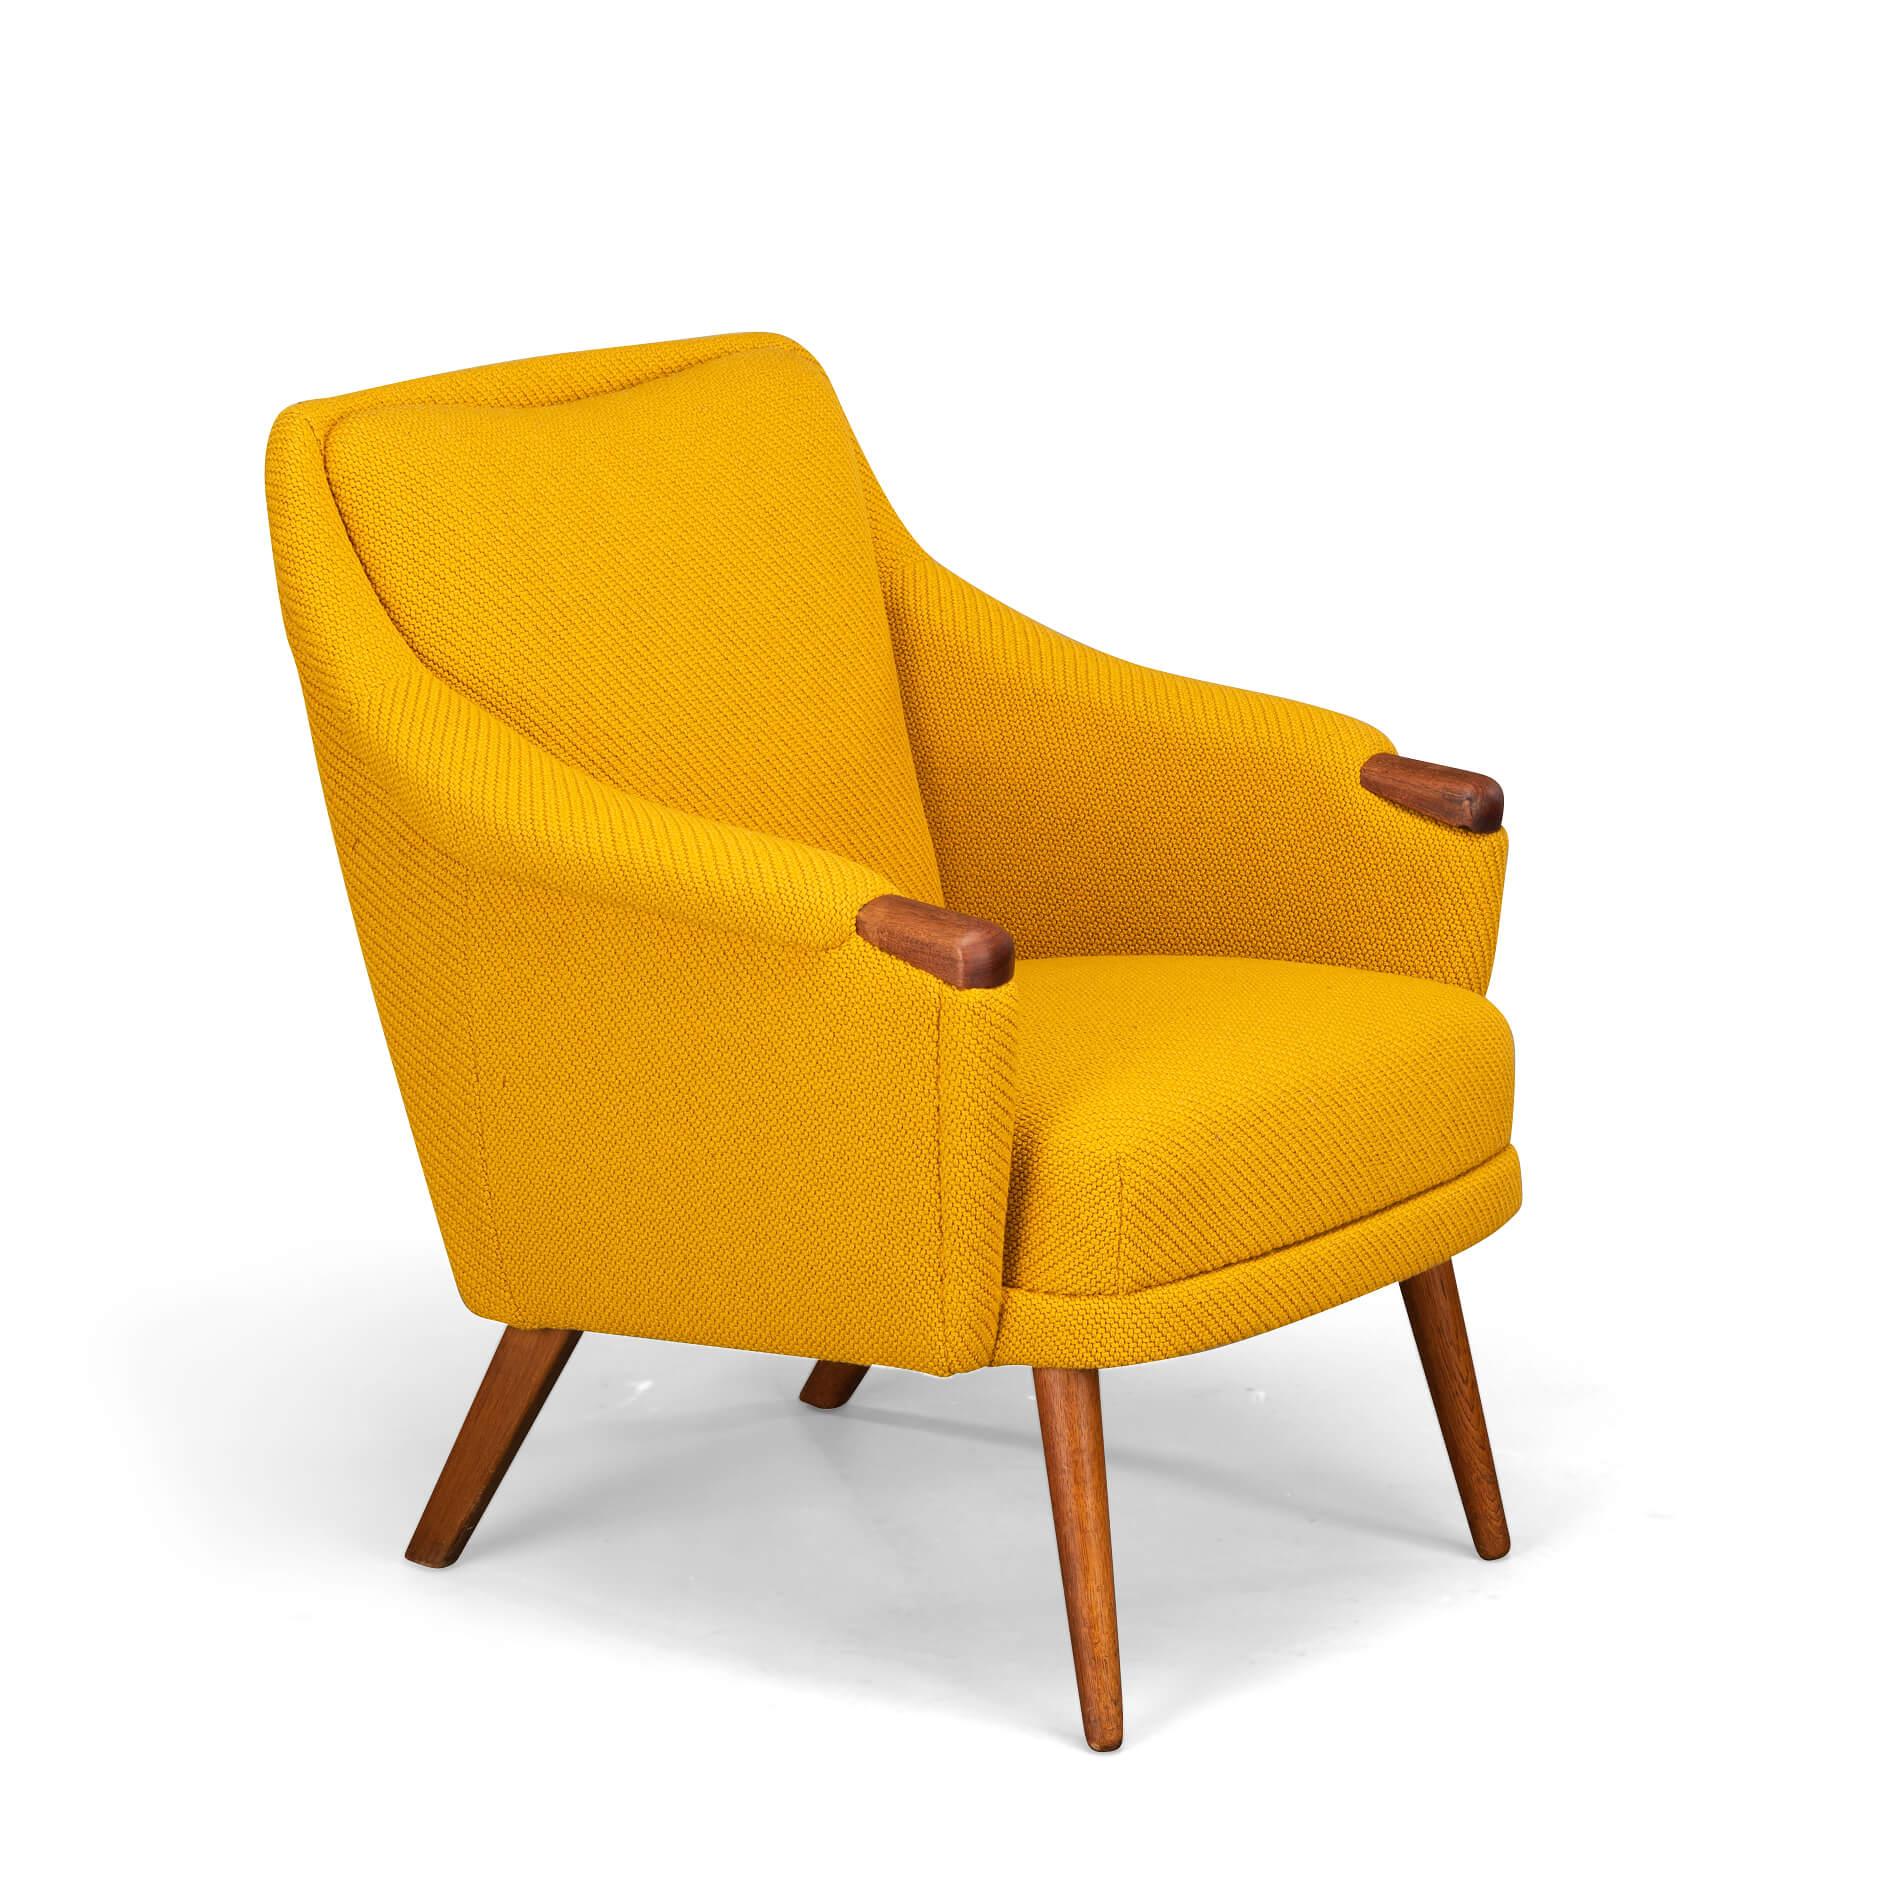 Edler Sessel von Johannes Andersen für CFC Silkeborg mit neuem Bezug. Dieser Stuhl ist mit Kvadrat, Coda 2, neu gepolstert, in voller Übereinstimmung mit der Originalpolsterung, wie sie von Andersen entworfen wurde. Dieses Sofa hat einen geräumigen